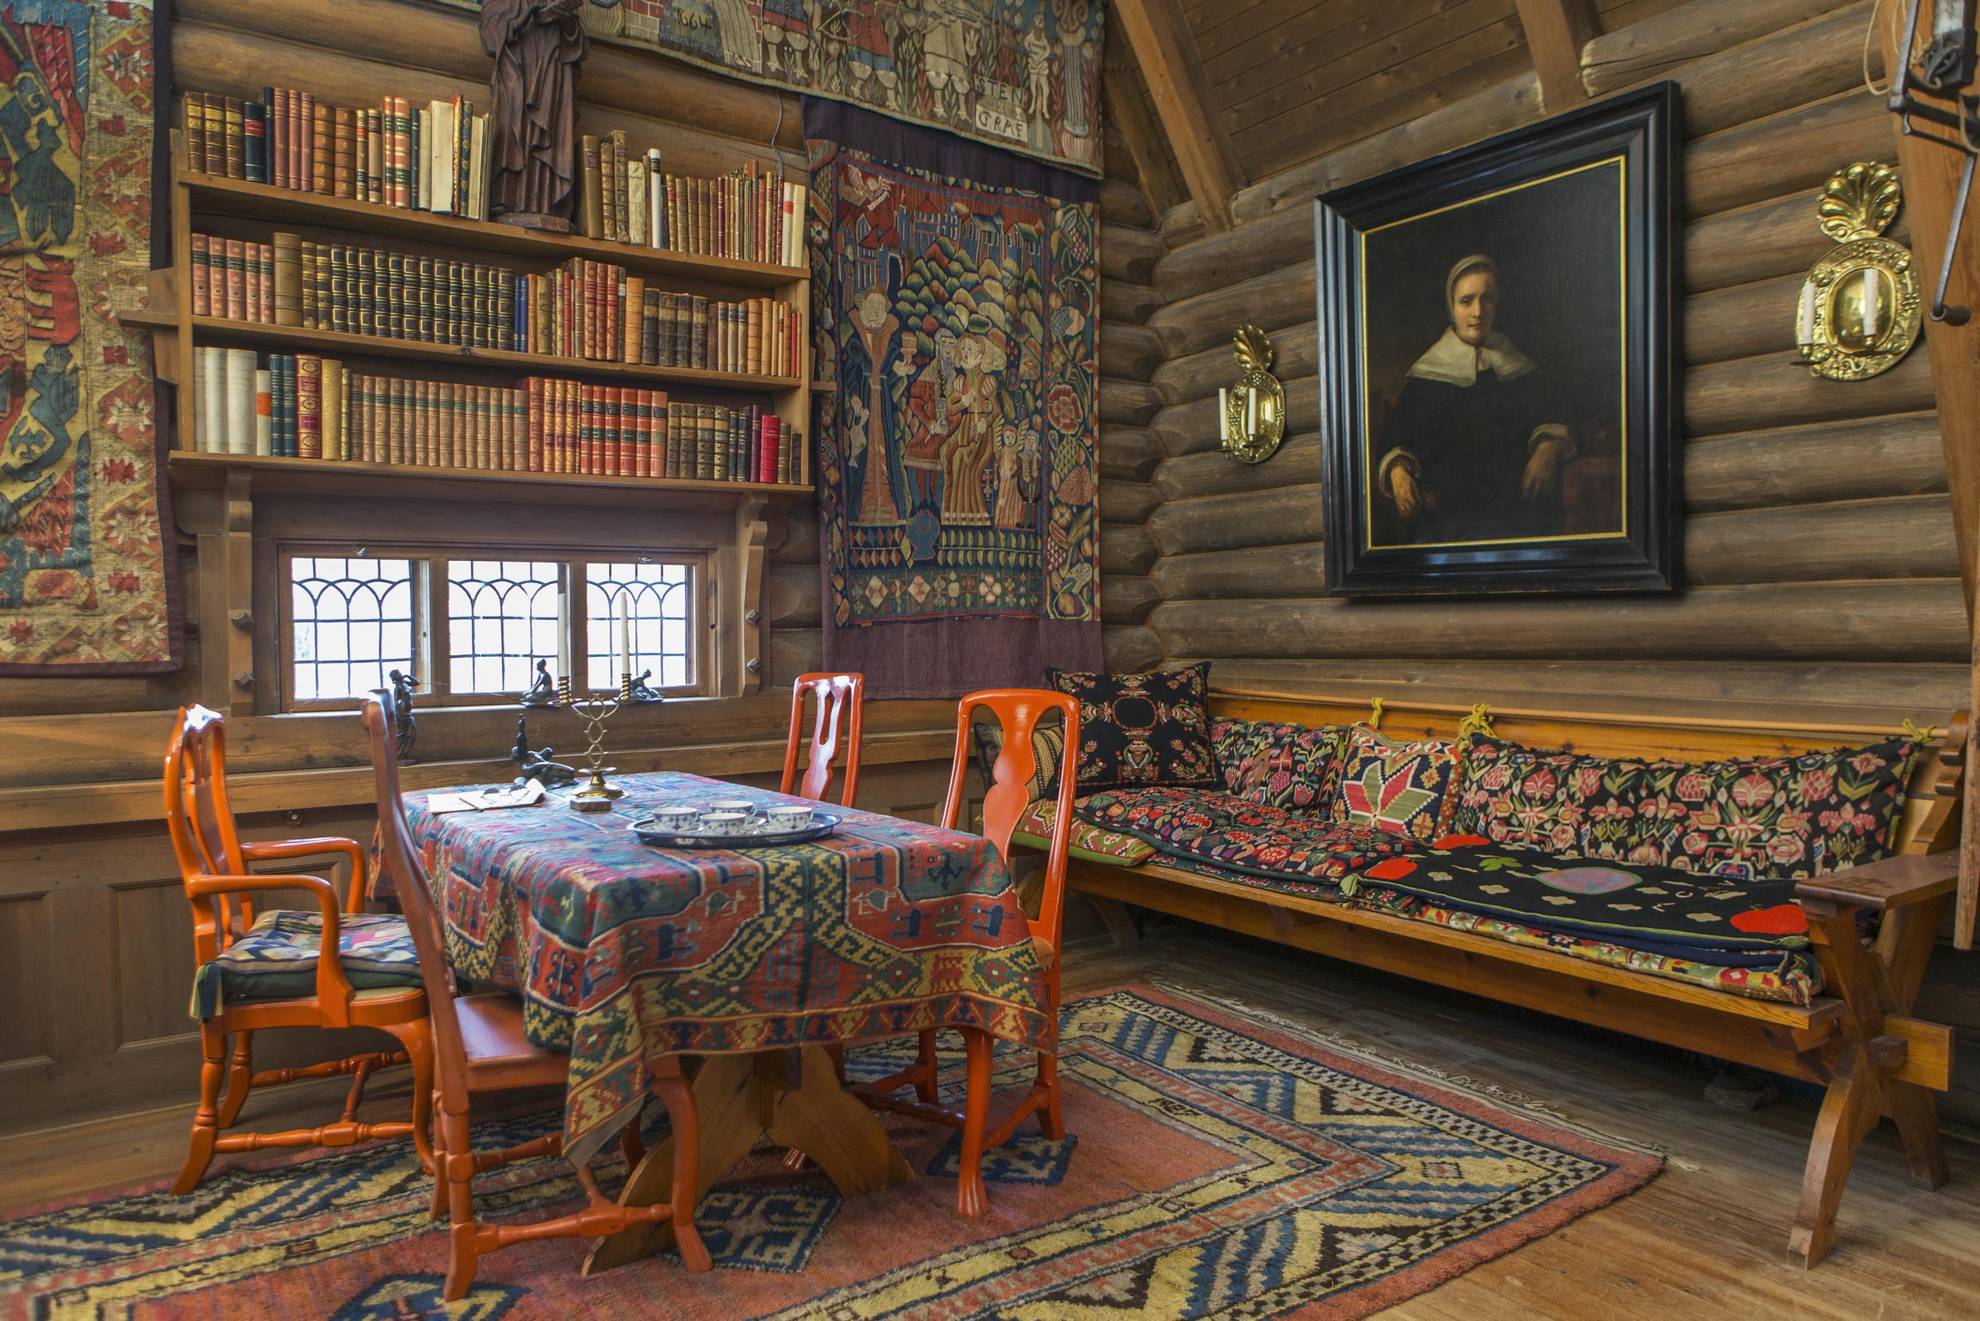 La salle à manger colorée d'Anders Zorn, avec des tapisseries, des chaises rouge vif autour d'une table avec un tissu tissé, une étagère et un canapé en bois.